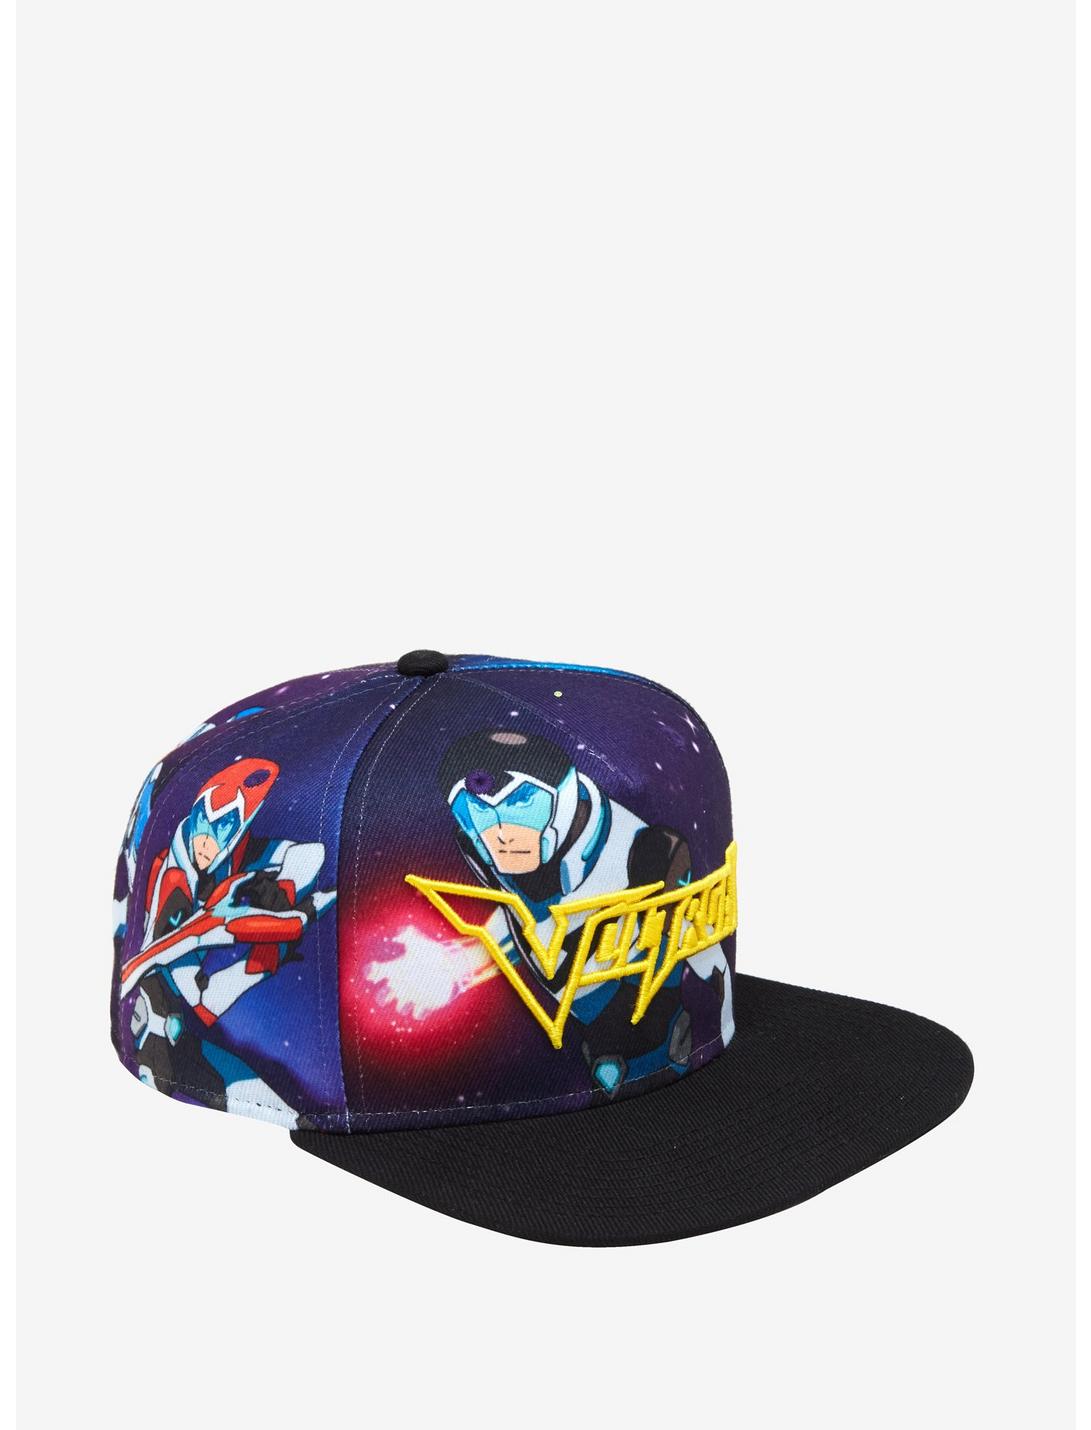 Voltron: Legendary Defender Paladins Sublimation Snapback Hat, , hi-res